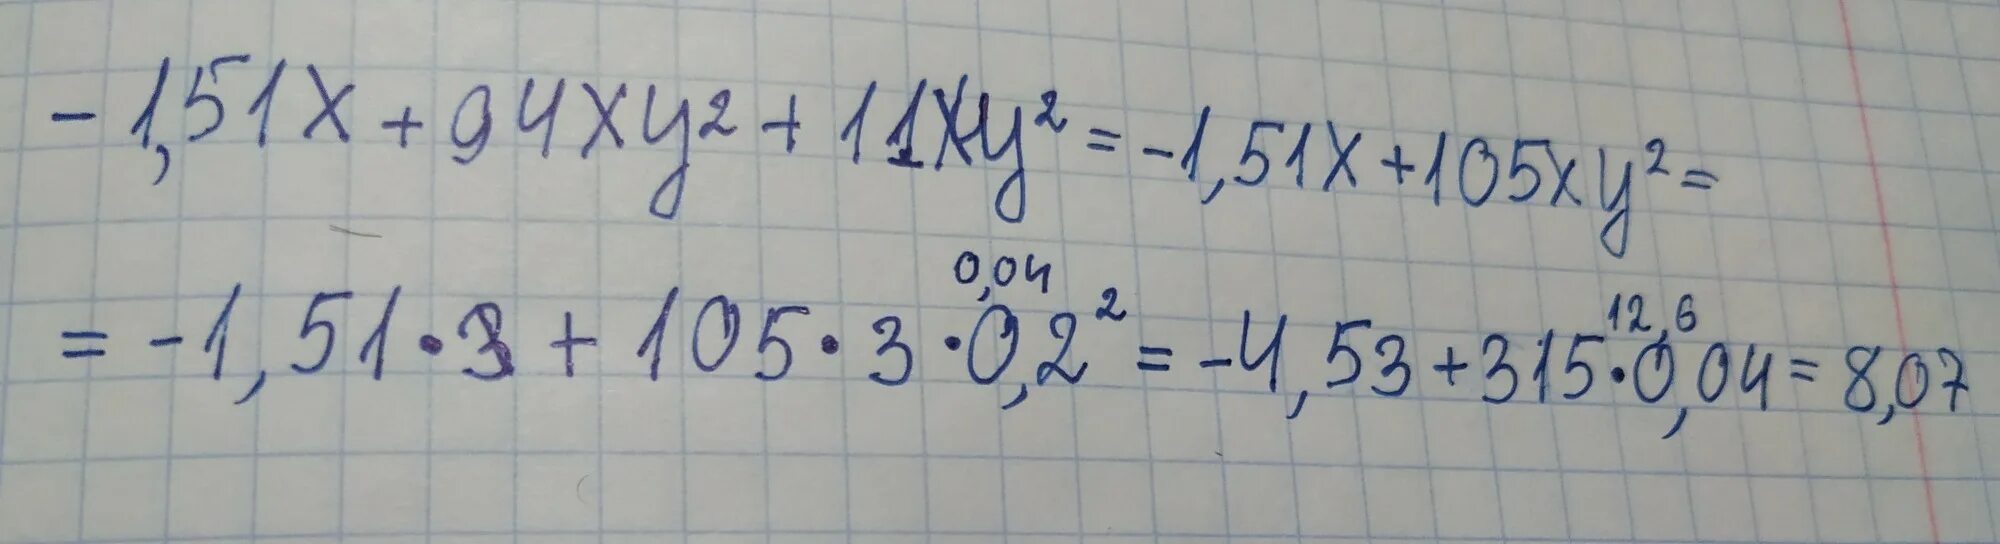 Найди значение многочлена -1,62x+66xy²+19xy². Значение многочлена1. 67 X + 63 X Y ² + 29xy² если x = 2 и y = 0,1. Найдите значение многочлена - 1,3x+95xy²+17xy²,если x=3 и y=0,1.